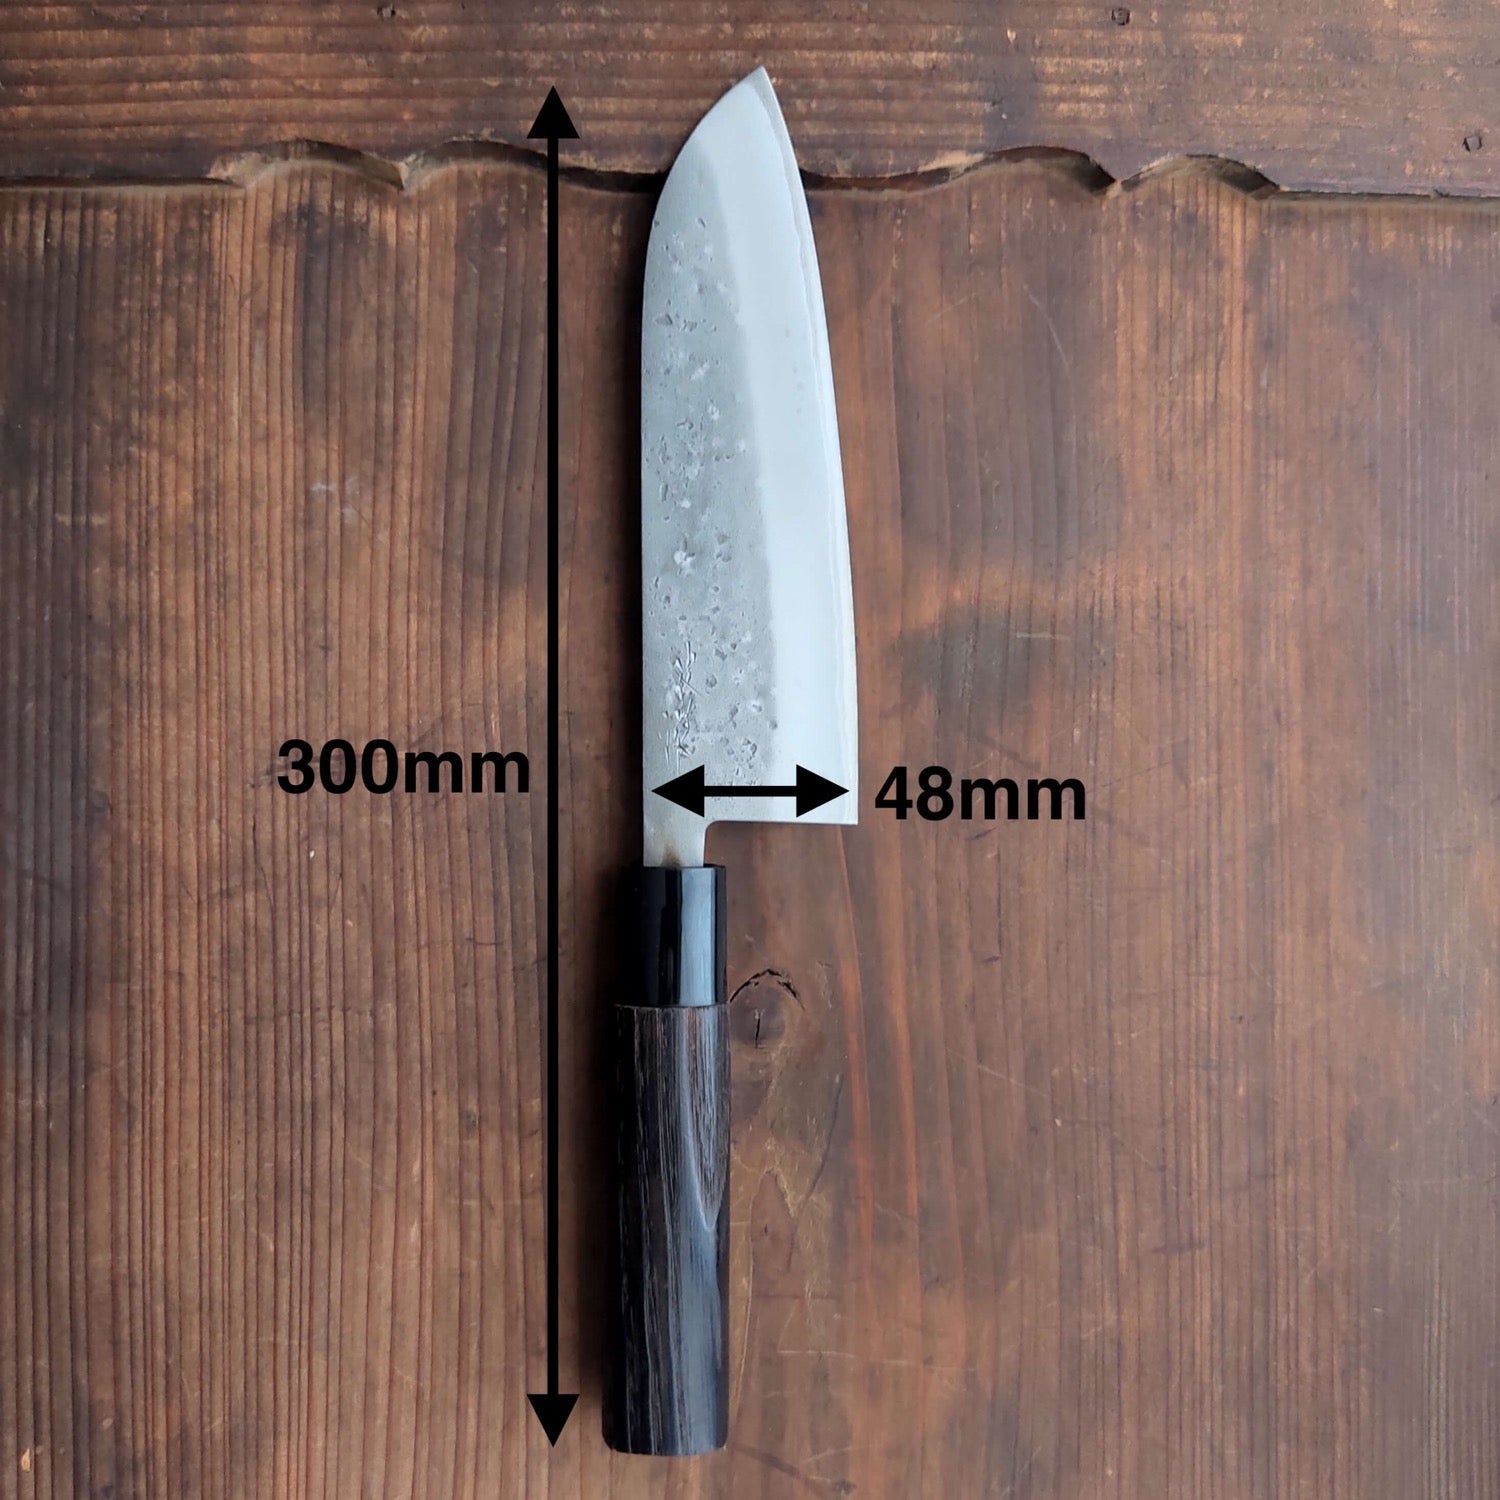 Japanese kitchen knife - Santoku - Nashiji - Aogamii#2 - sanjo blacksmith - size